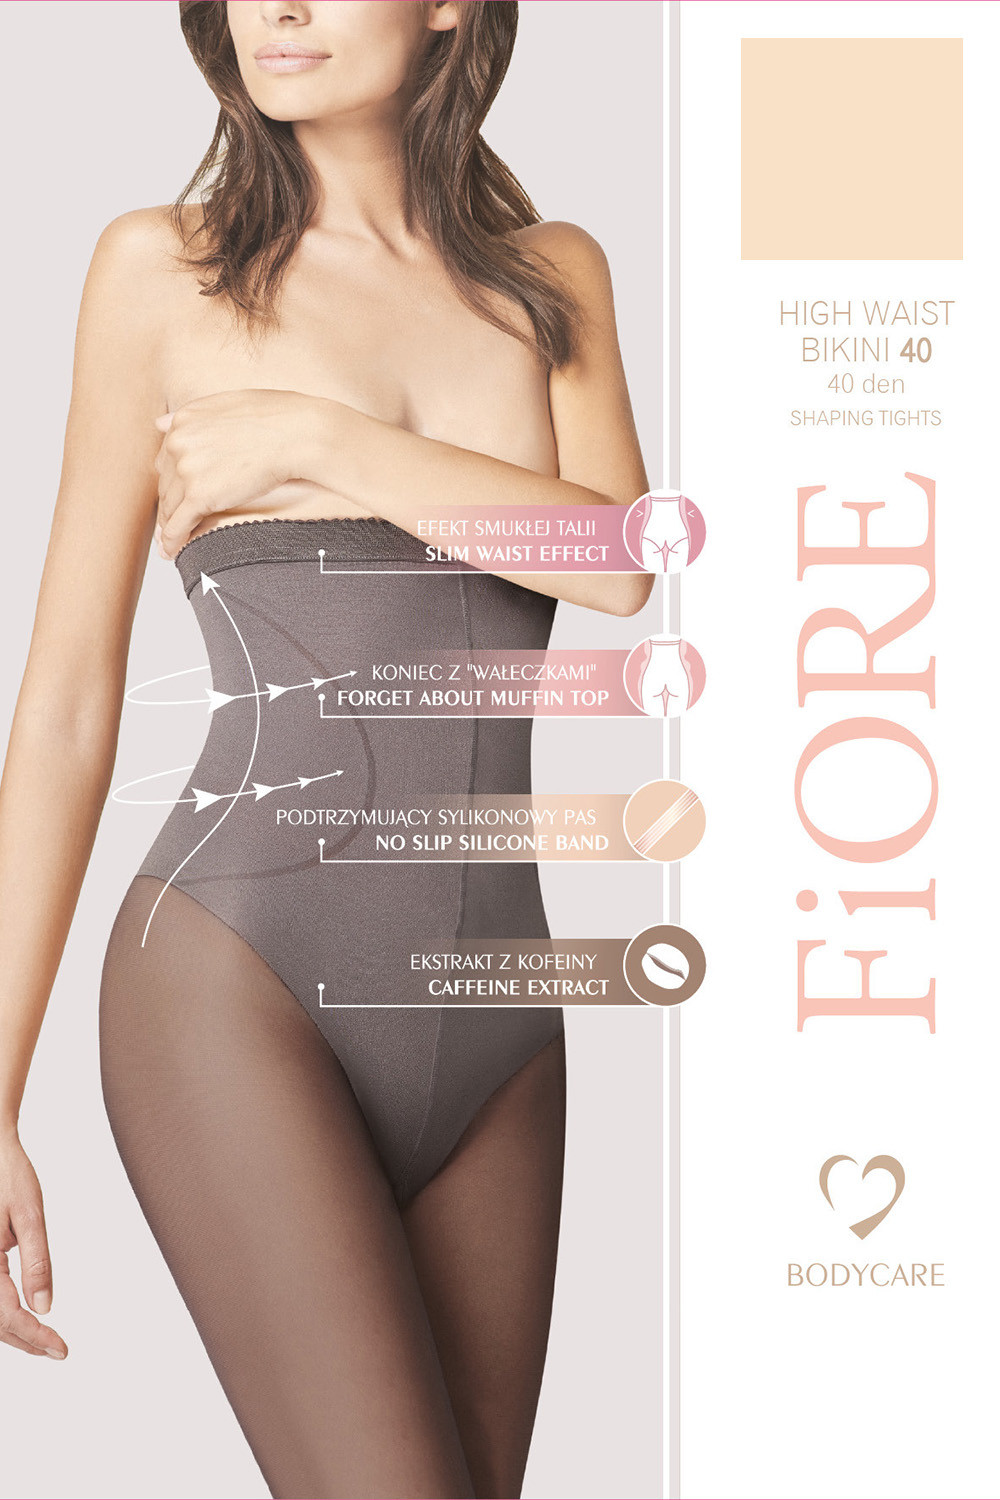 Fiore High Waist Bikini 40 den M5219 kolor:light natural 4-L